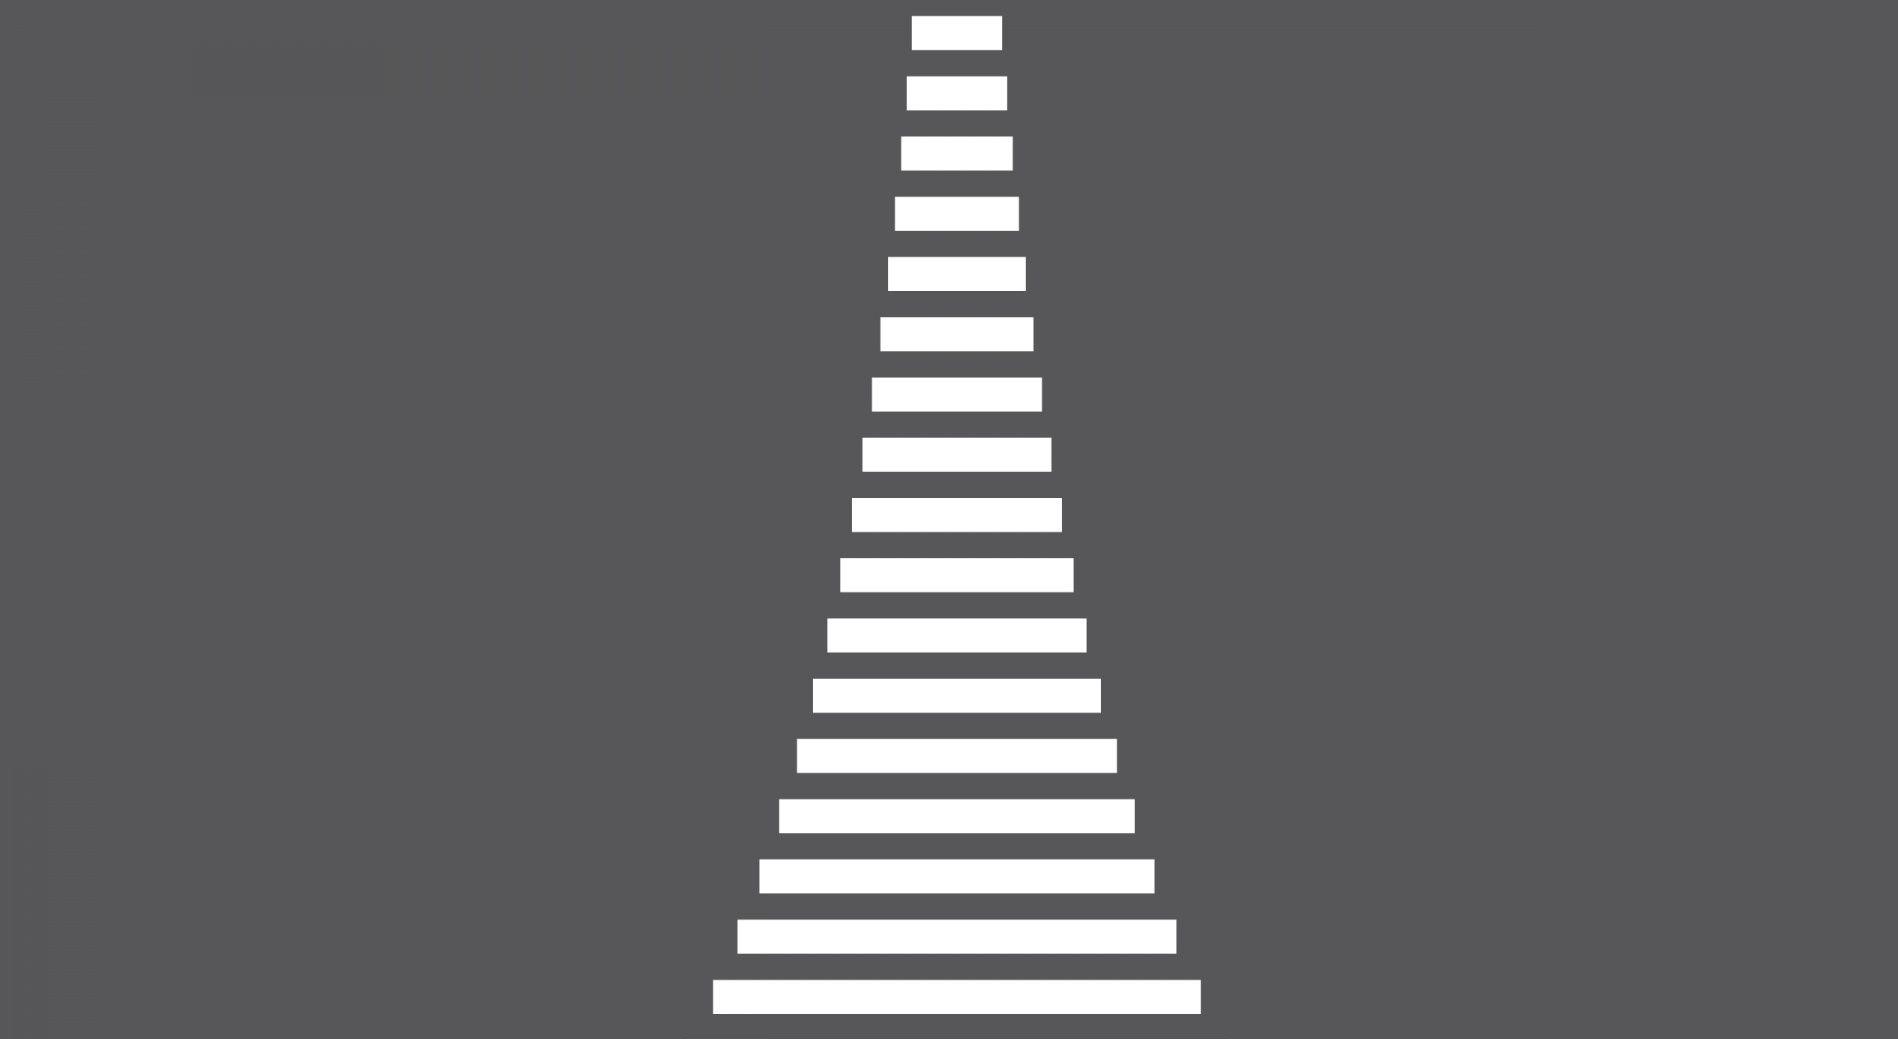 دانلود رایگان والپیپر مینیمالیستی در طرح خط های افقی سفید 